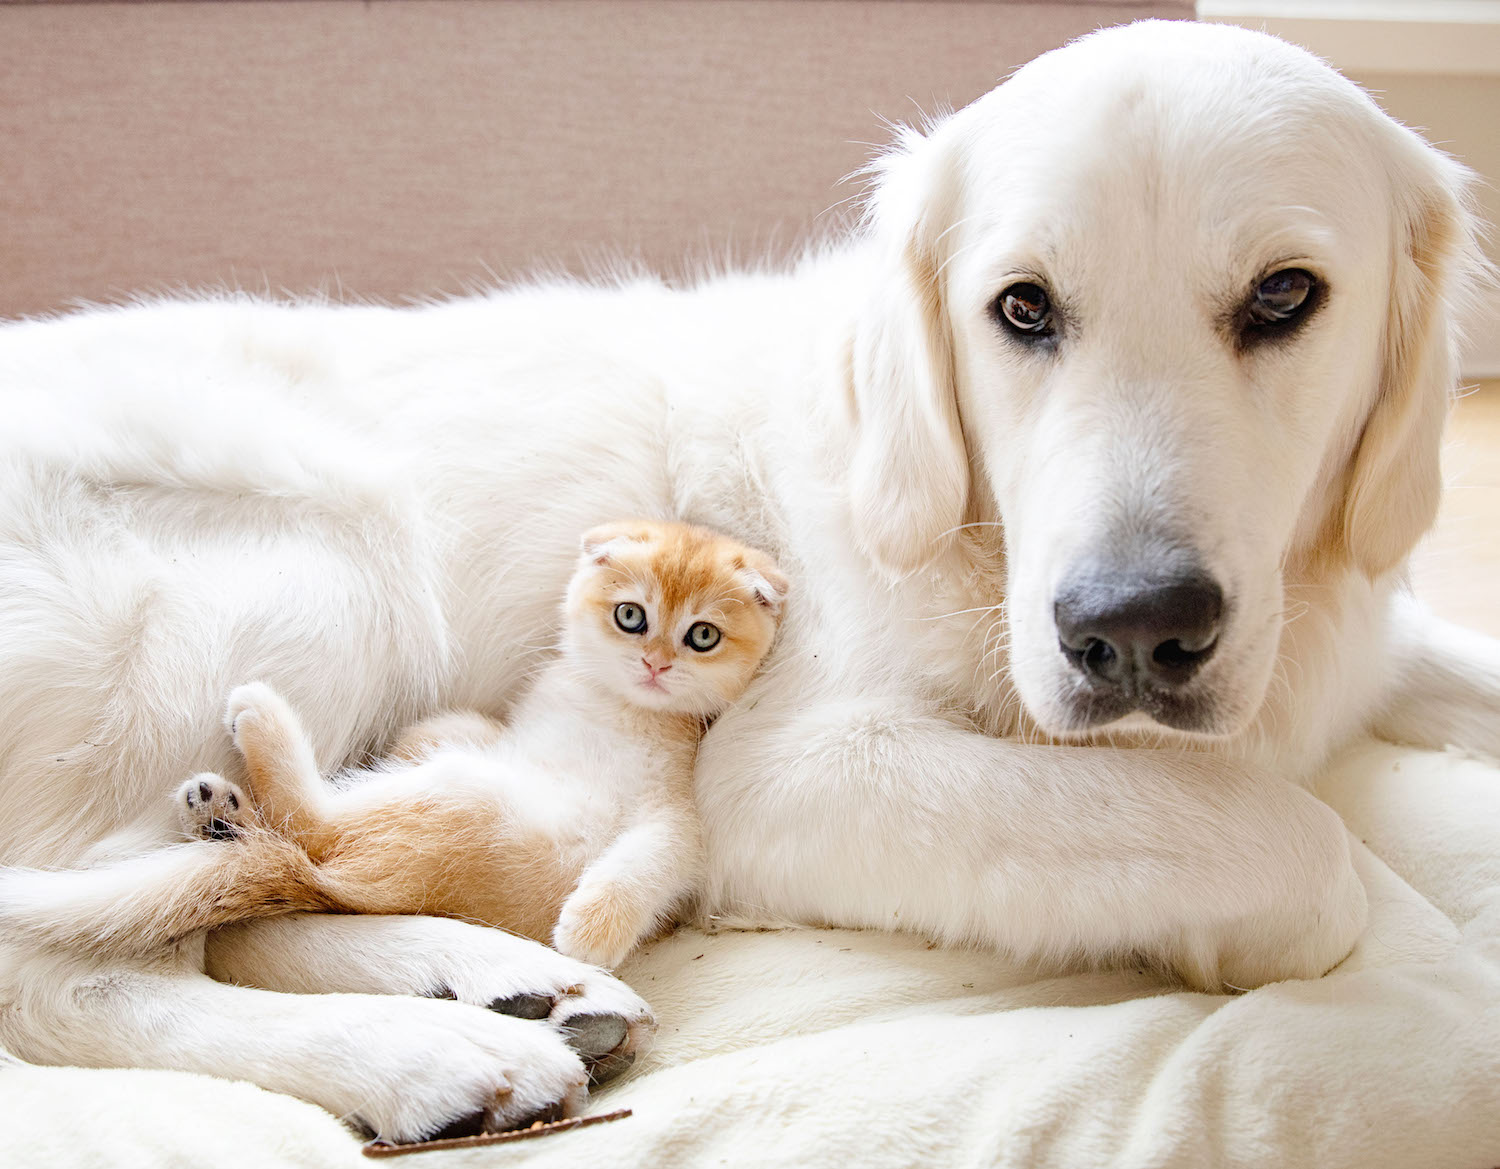 Xem hình chú chó và mèo con dễ thương, bạn sẽ có cảm giác như đang nhìn vào hai thiên thần cưng của một gia đình. Với đôi mắt to tròn, tính cách tinh nghịch đáng yêu, chúng sẽ làm trái tim bạn tan chảy.